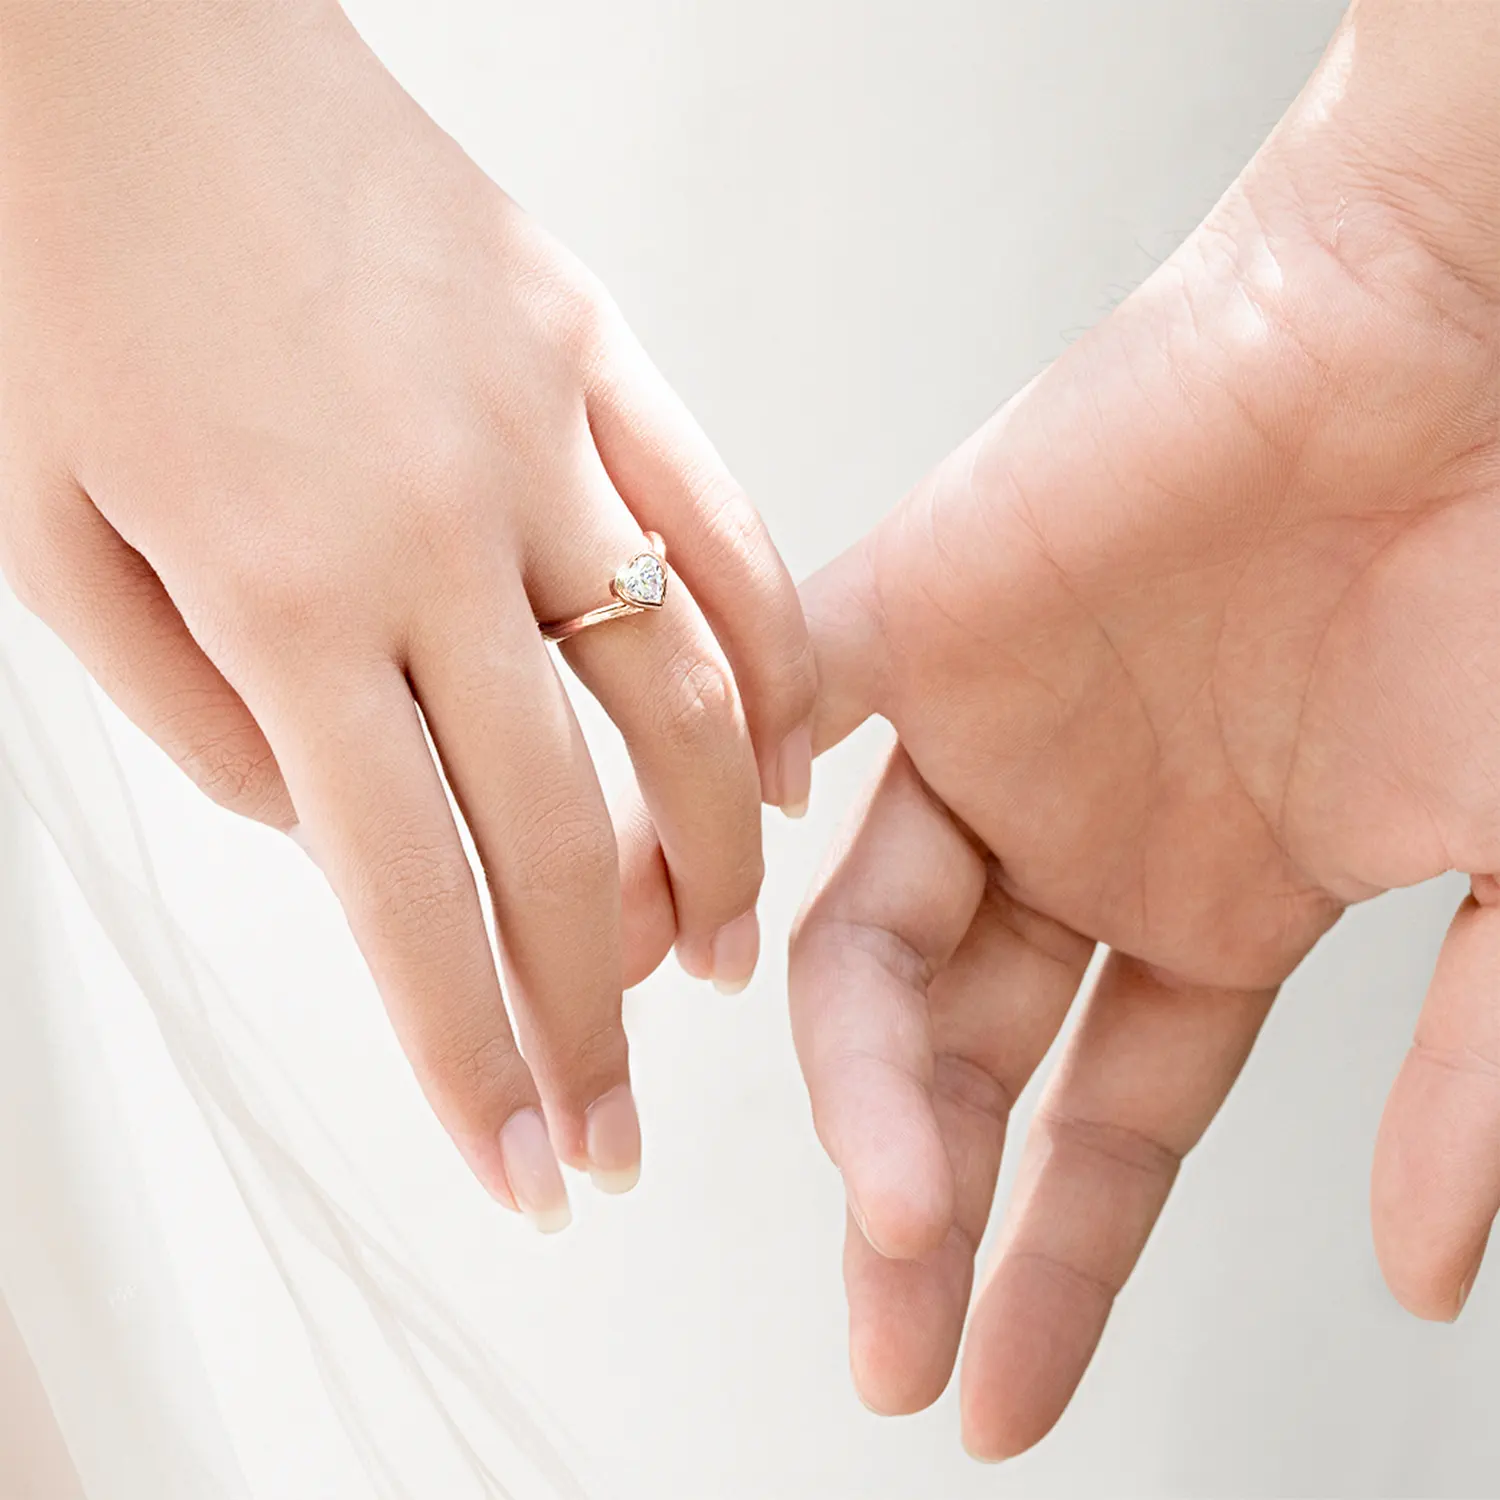 Bridal Gown - Từ cảm hứng váy cưới đến nhẫn cầu hôn độc đáo 